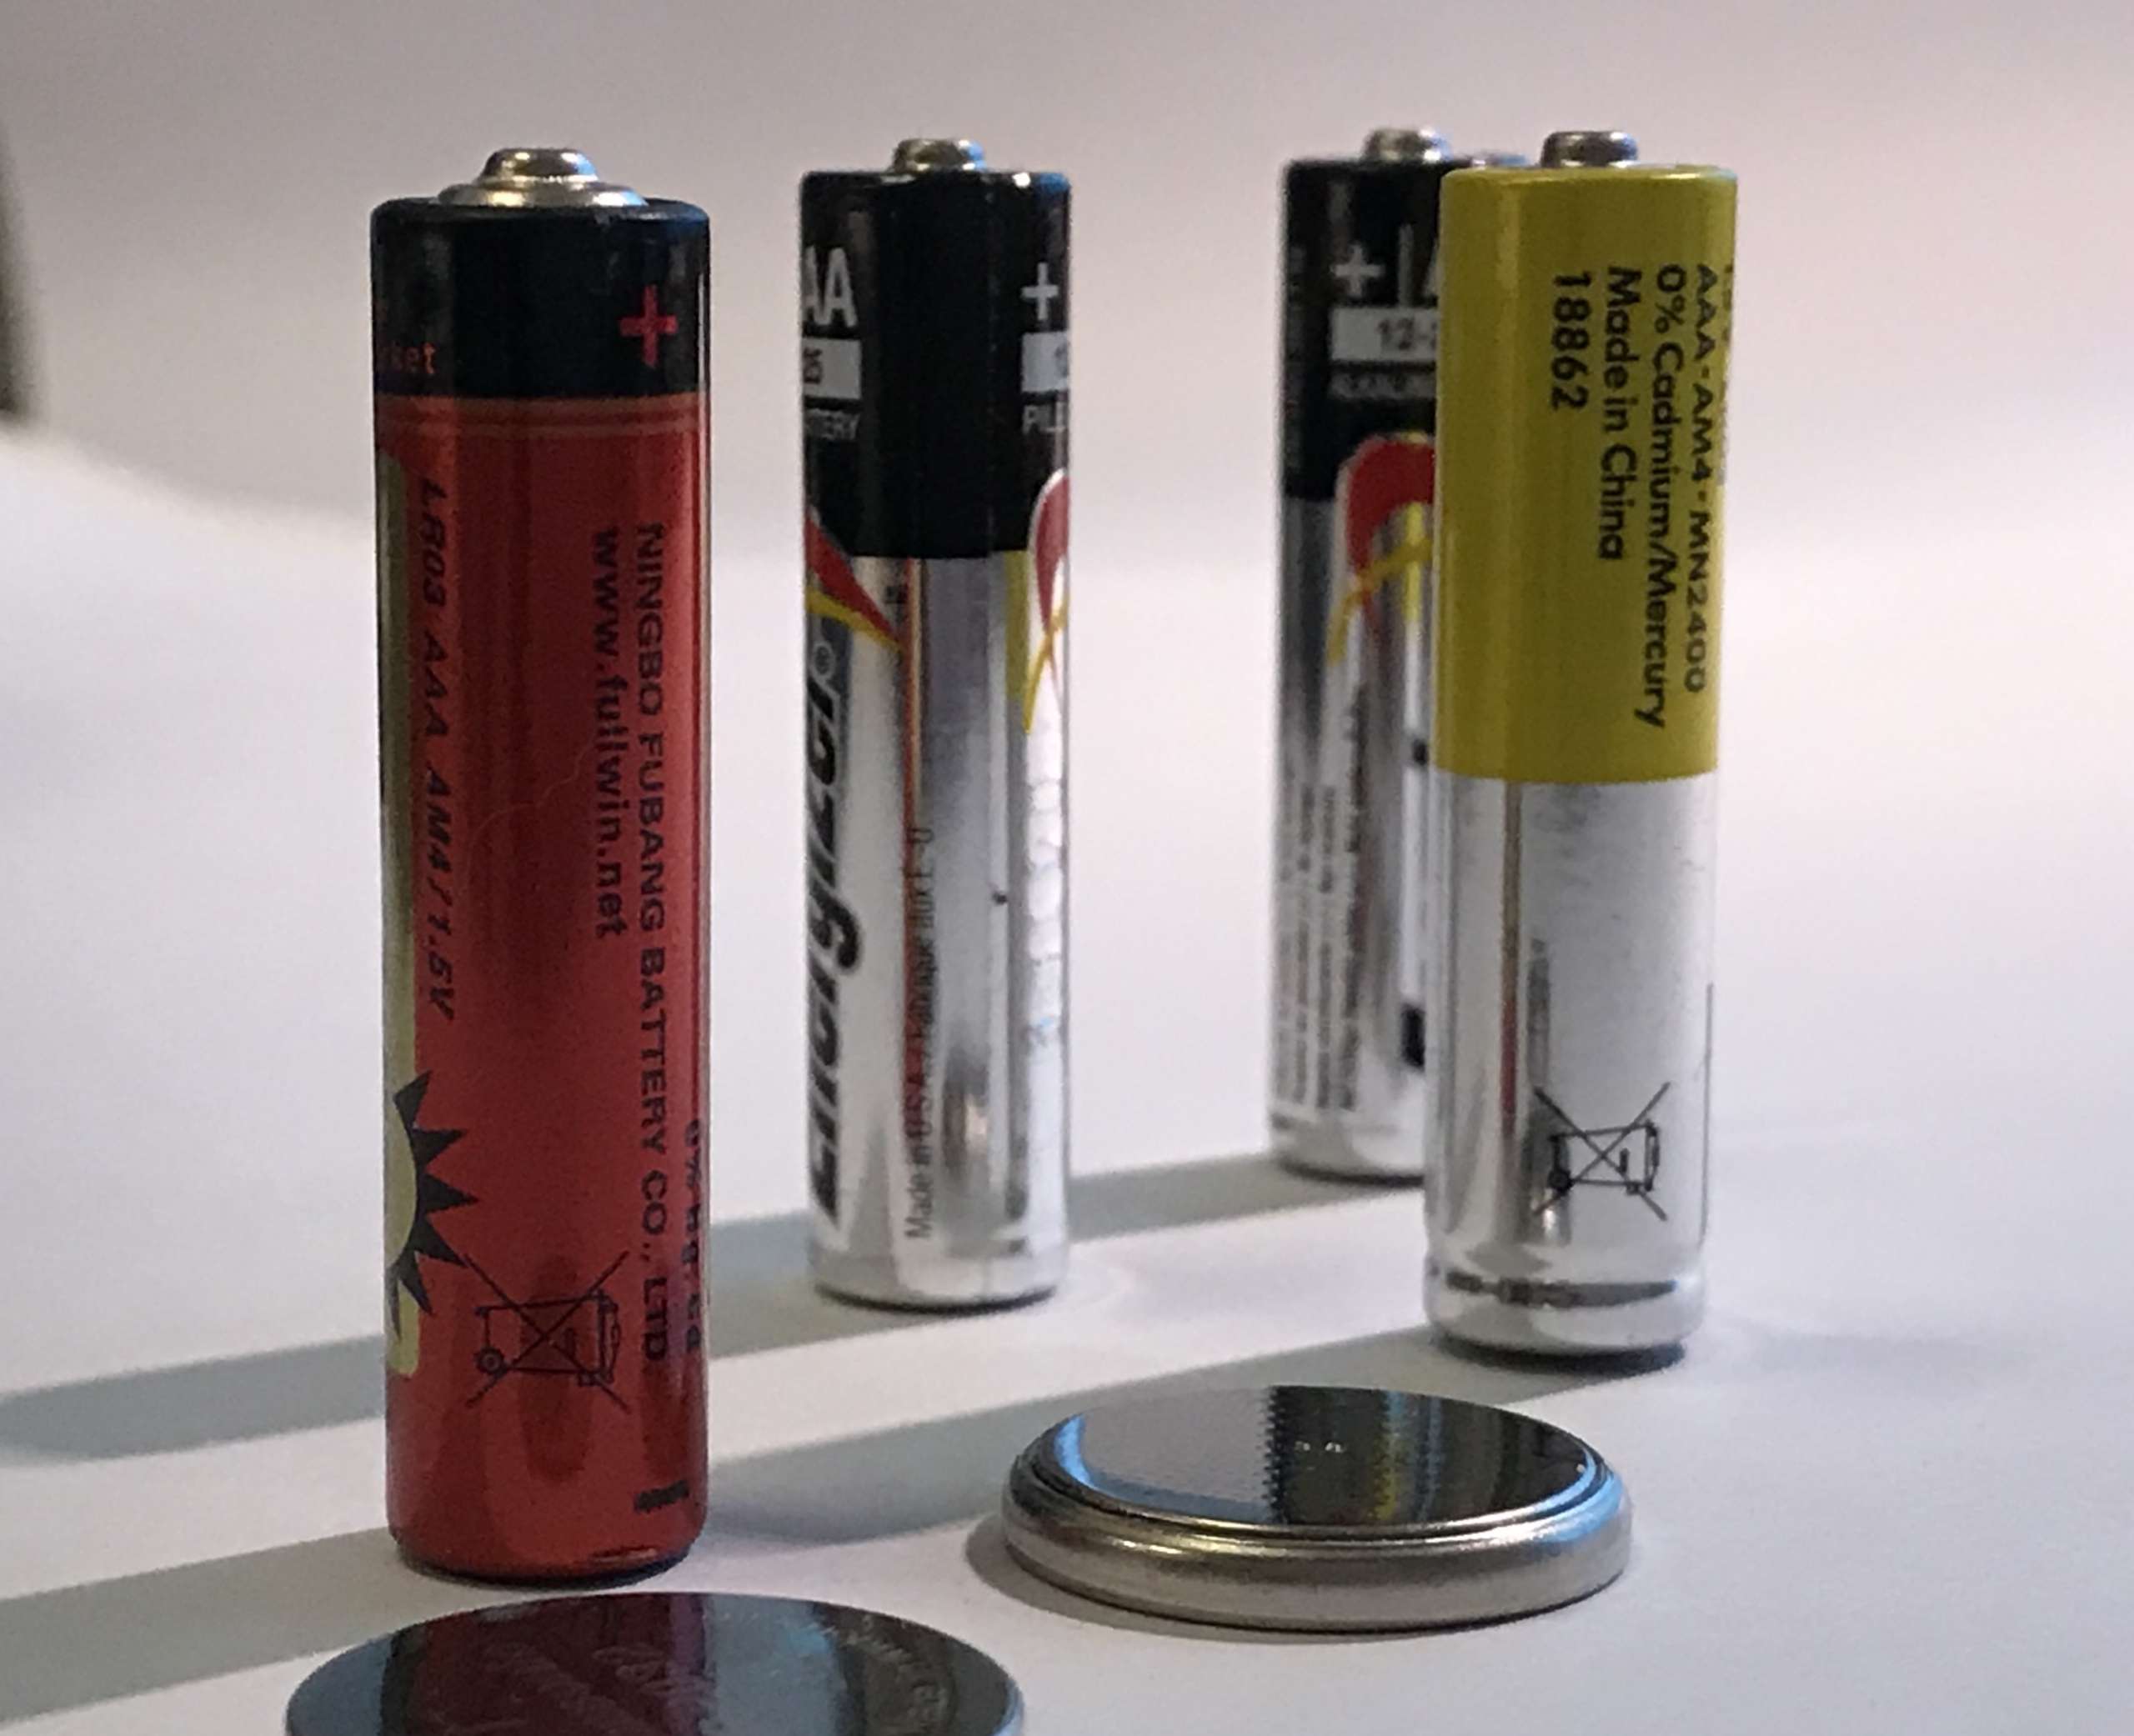 Merking av batterier